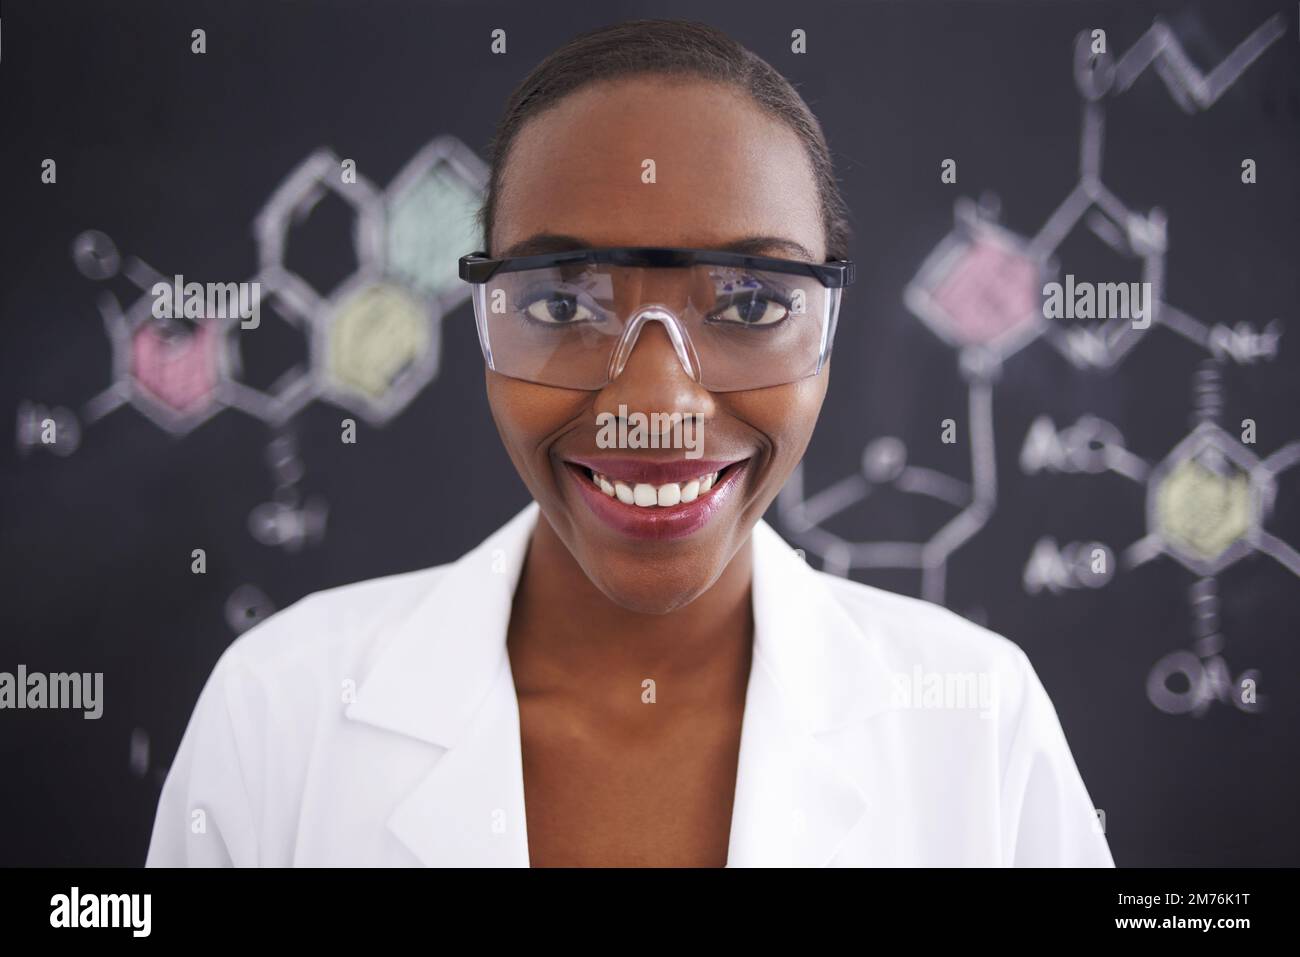 Sie ist verrückt nach Molekülen. Eine Wissenschaftlerin steht vor einer Tafel voller Zeichnungen chemischer Bindungen. Stockfoto